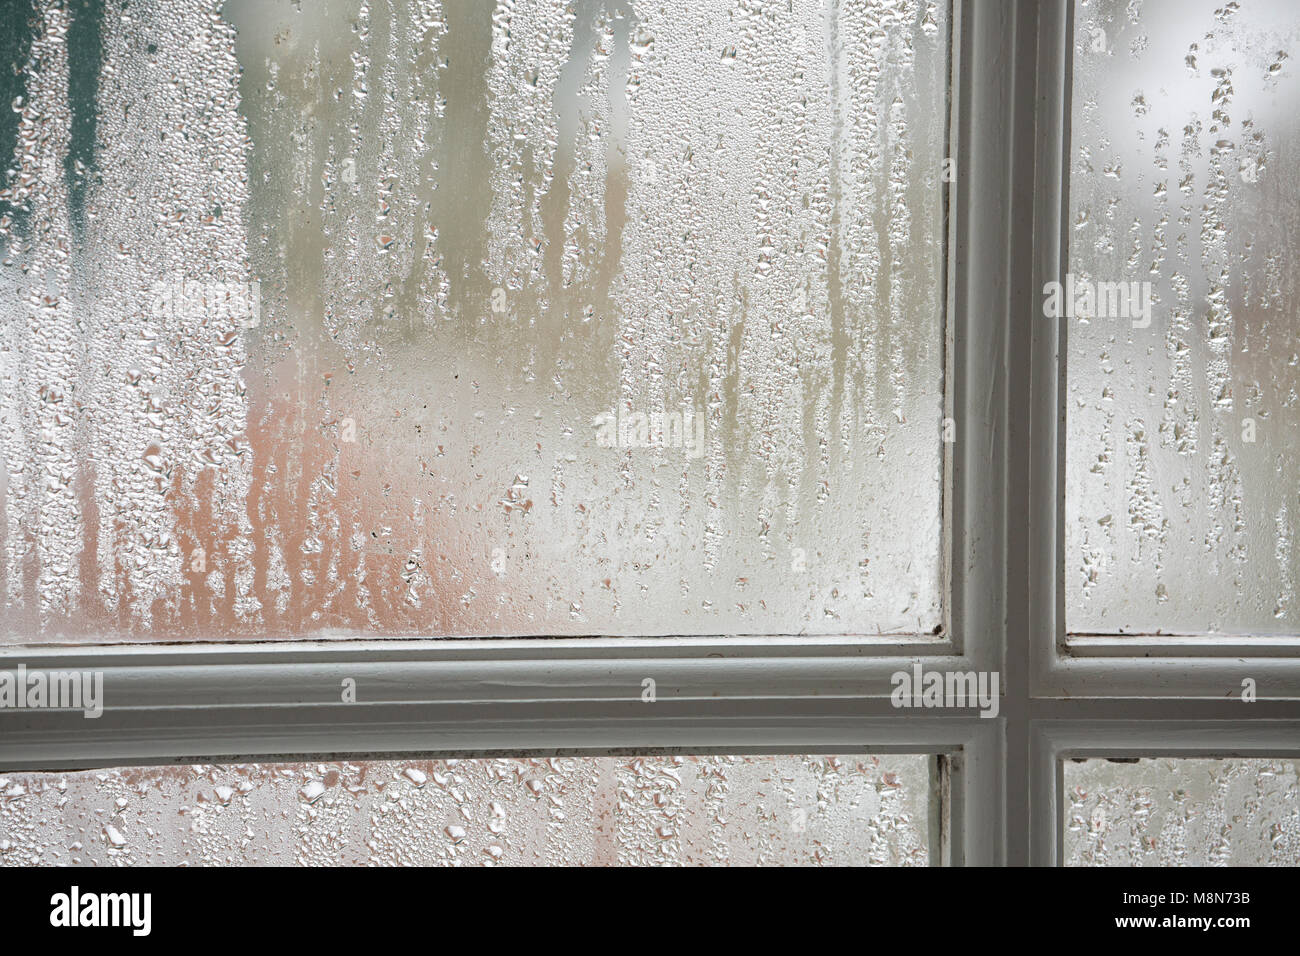 La condensation sur les fenêtres à guillotine en bois volet unique par temps froid, Dorset UK Banque D'Images